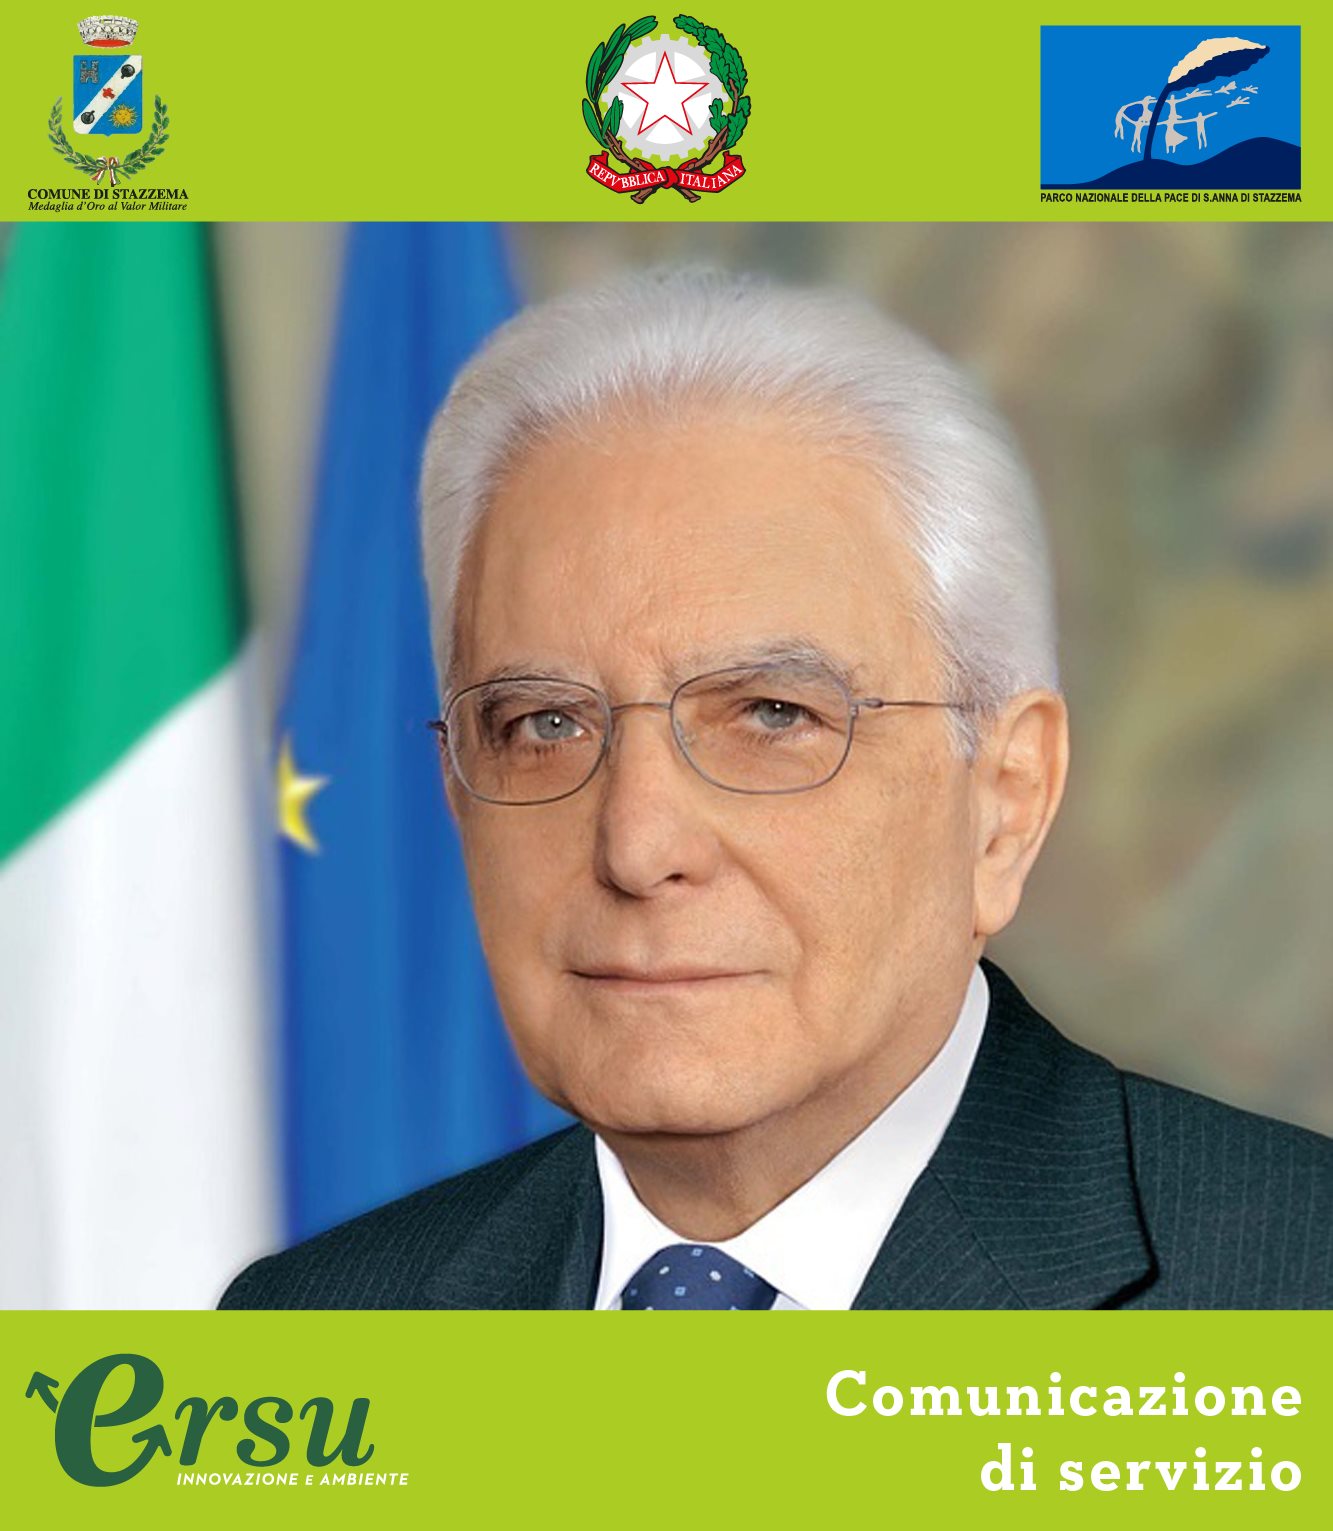 Arriva il presidente Mattarella, l’invito di Ersu: “Tenete i rifiuti in casa”